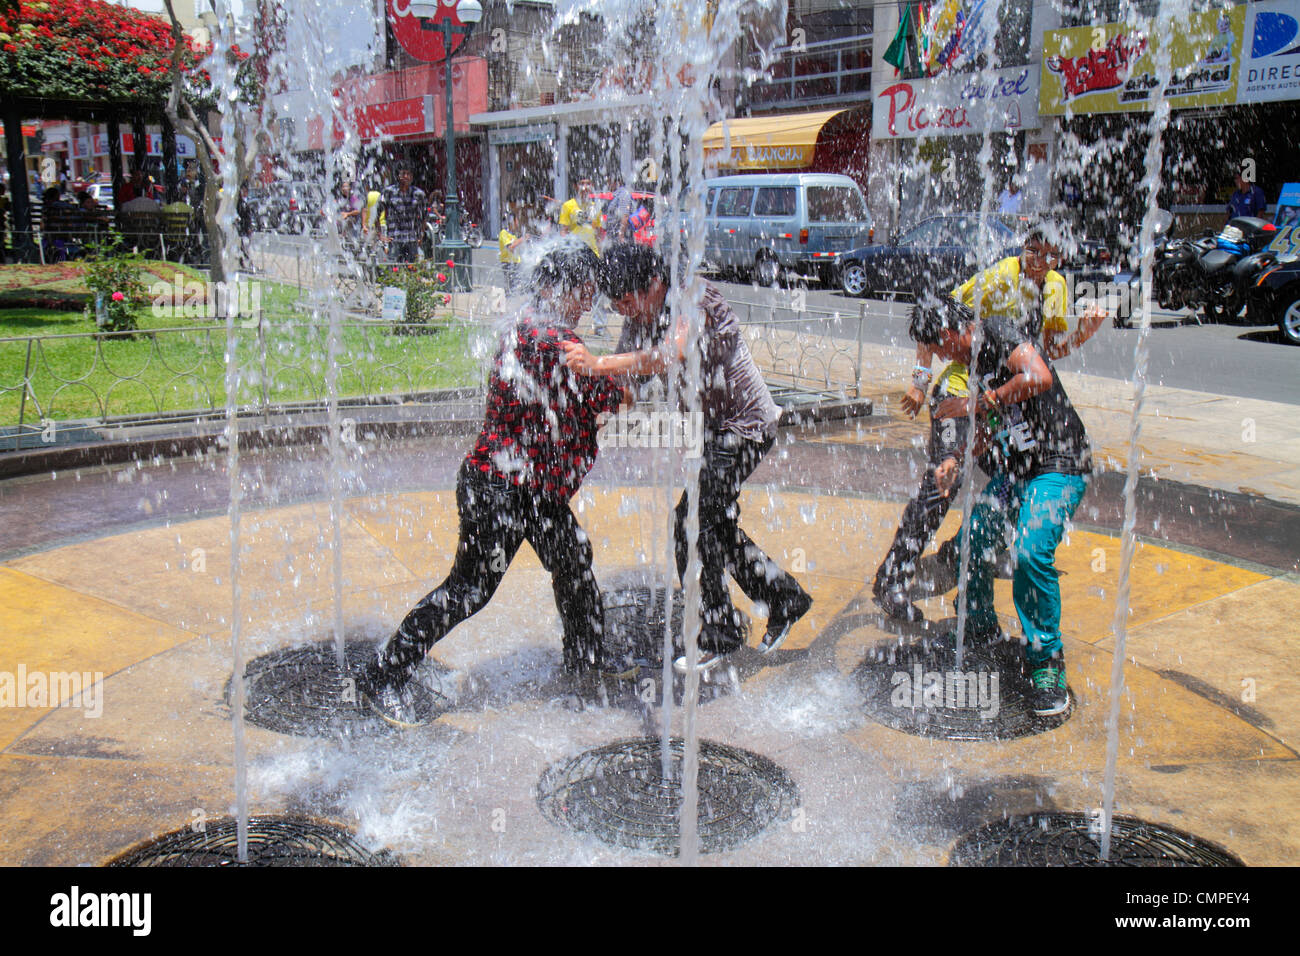 Tacna Peru, Avenida San Martin, Plaza de Armas, interaktives Wasserspiel, Springbrunnen, Wasserstrahl, Auslauf, hispanische Teenager Teenager Teenager Junge Jungen, männlich k Stockfoto